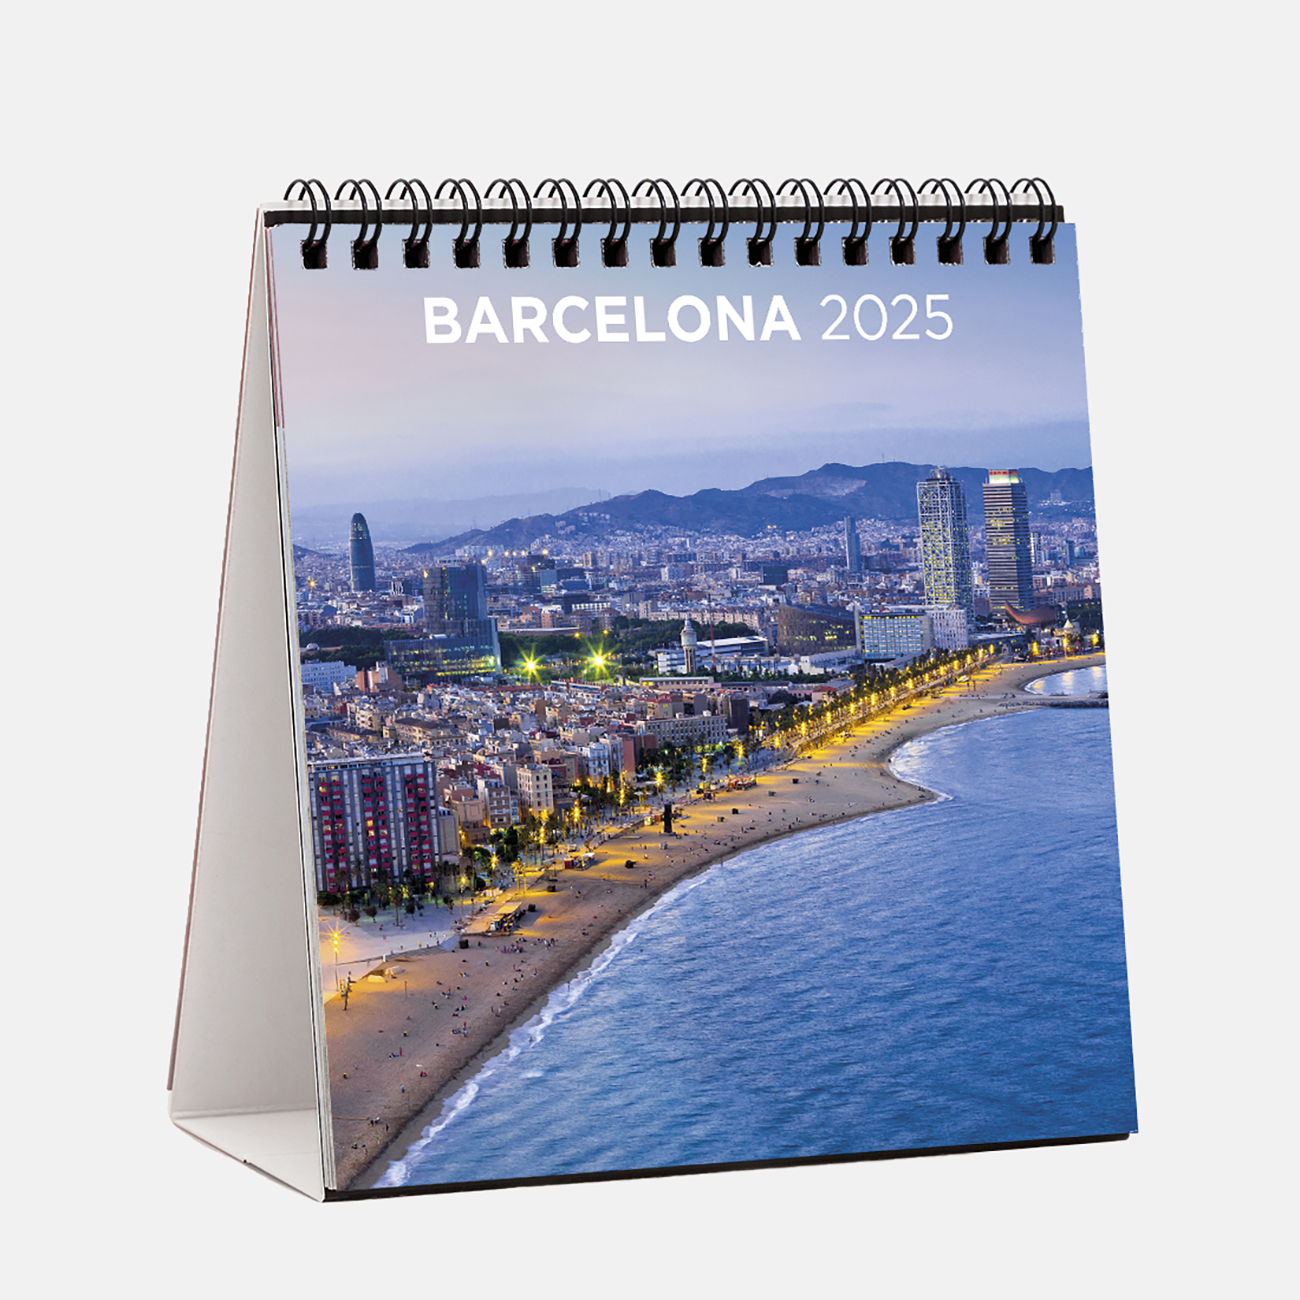 Calendario 2025 Barcelona s25b1 calendario sobremesa 2025 barcelona